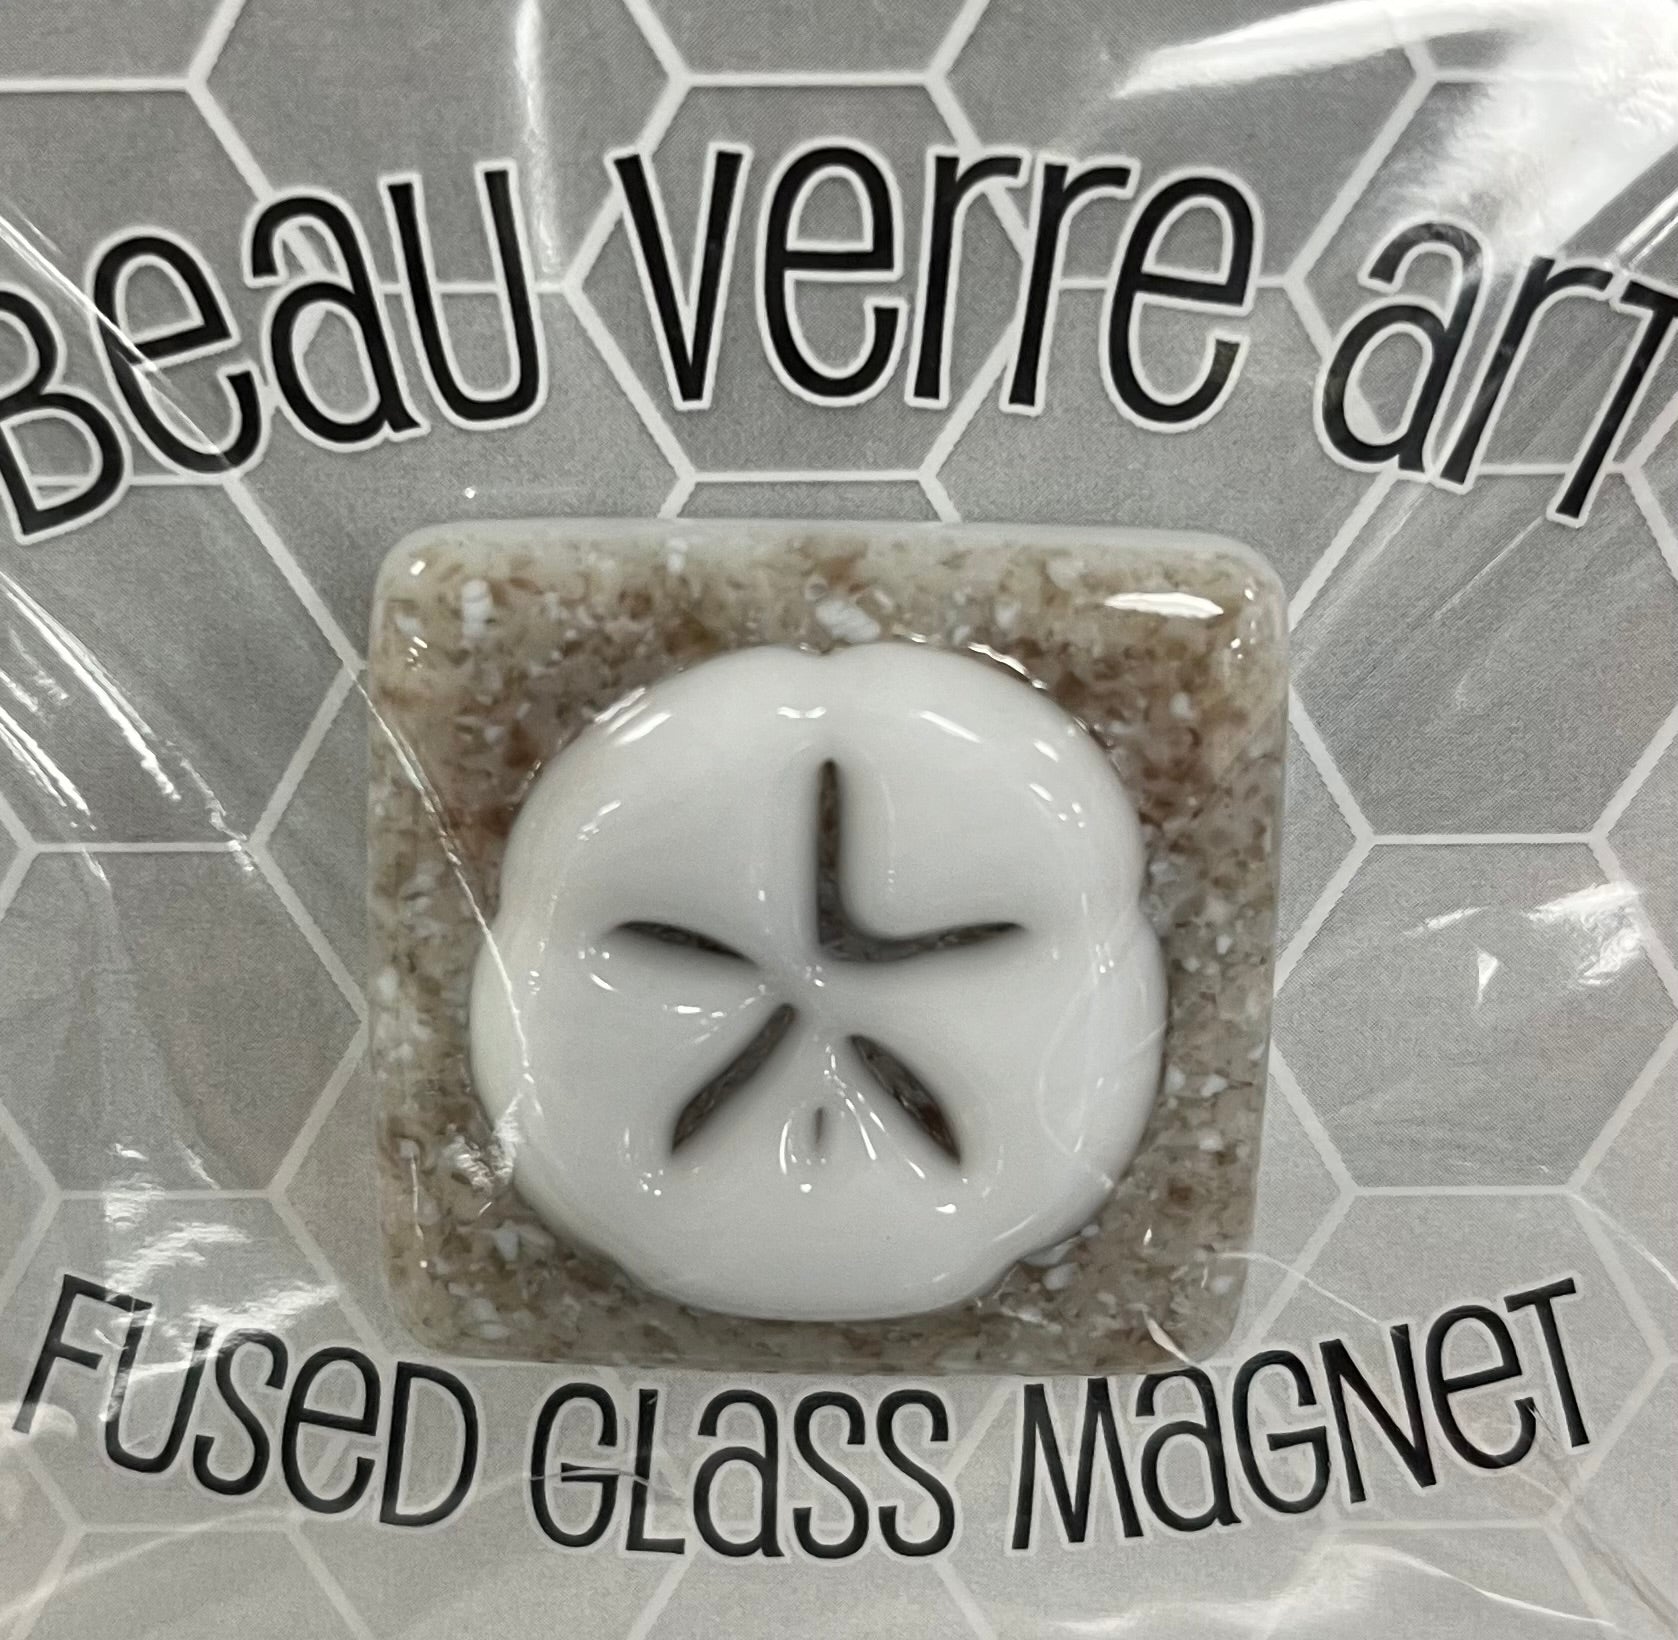 Beau Verre Art - Fused Glass Needleminders